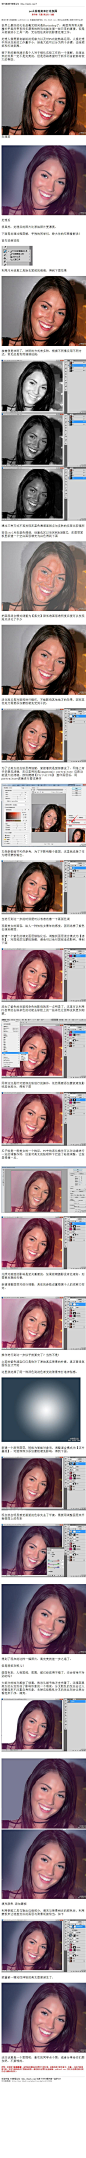 #磨皮教程#《photoshop去除瑕疵和打造氛围》 案例演示是个人对于细化这些工作的一个理解，处理出来的效果一定不是完美的，但是思路希望对于新手而言能够有较大的帮助。 教程网址：http://www.16xx8.com/photoshop/jiaocheng/2014/133924.html